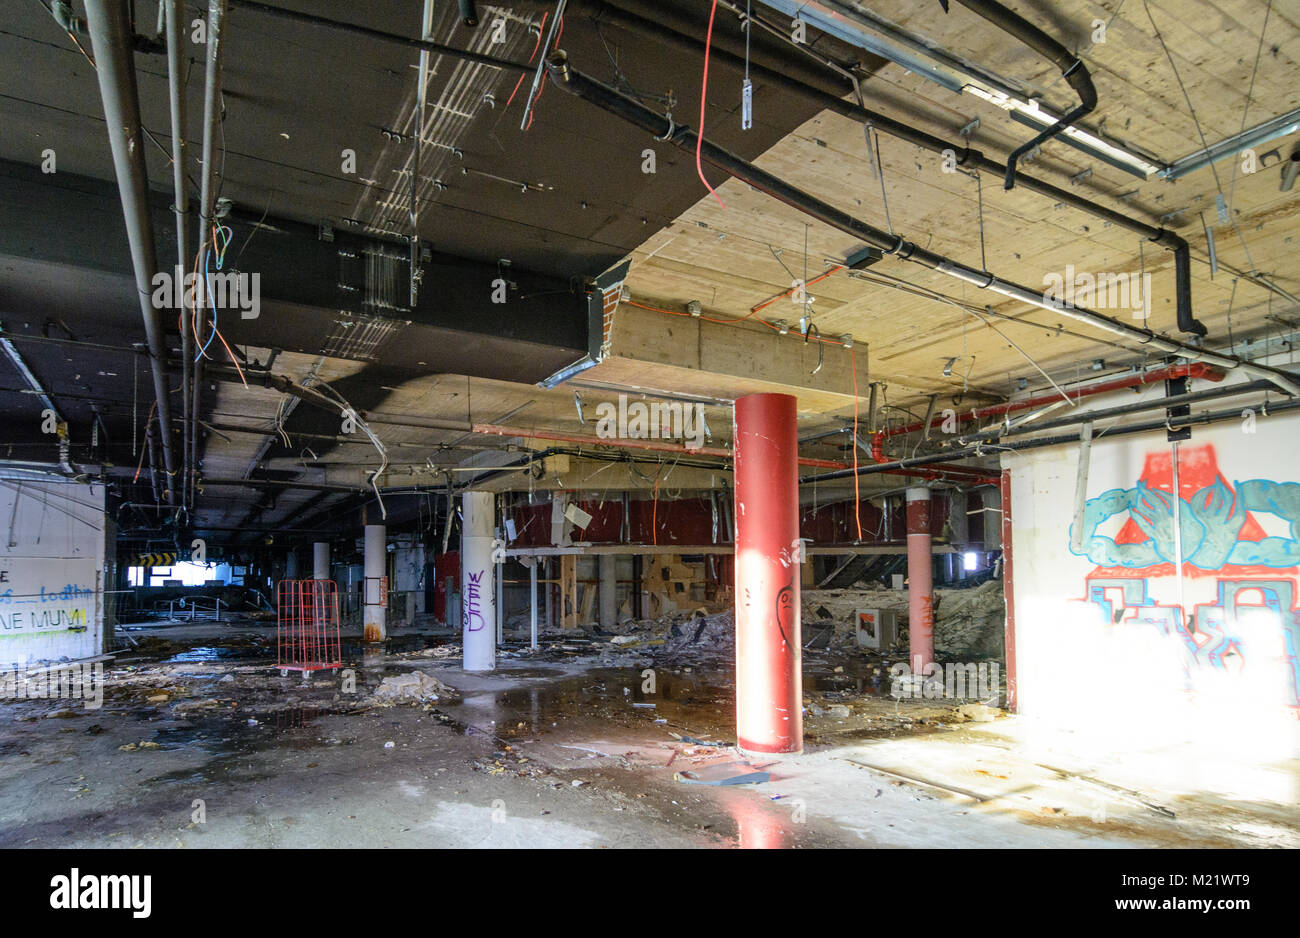 Wien, Vienna: inside former Cineplexx cinema at Reichsbrücke, now in demolition, 22. Donaustadt, Wien, Austria Stock Photo